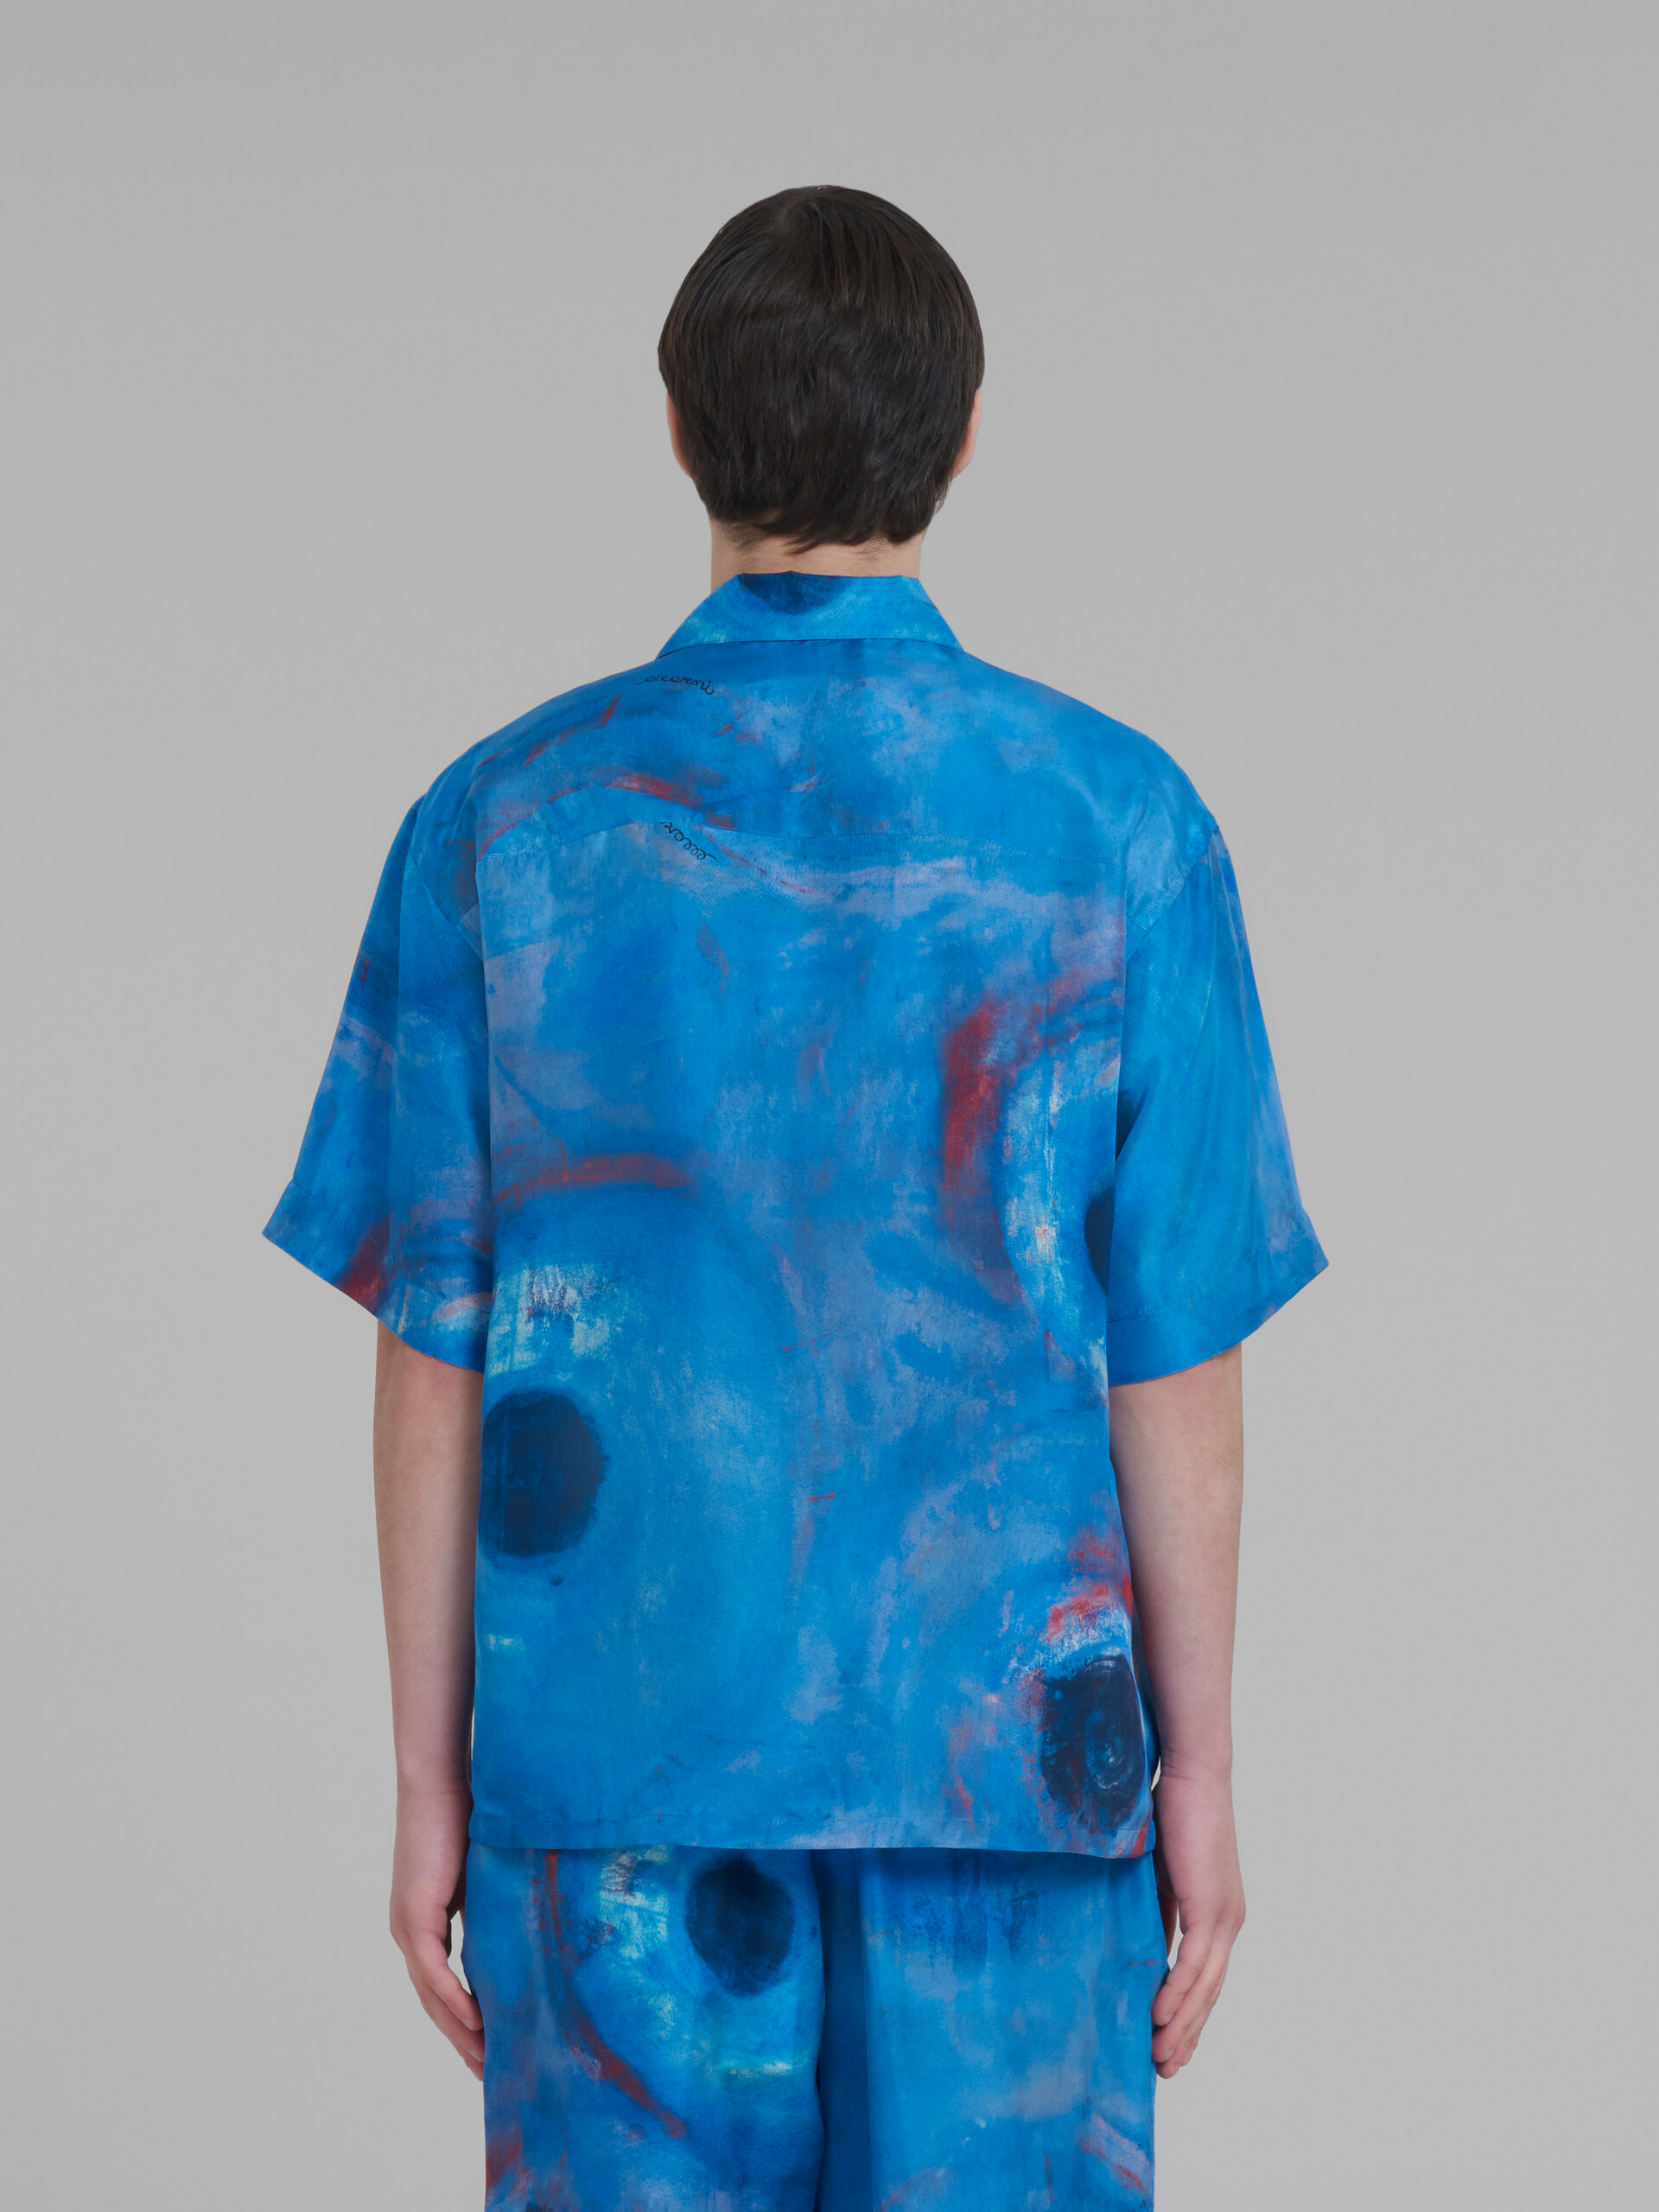 Bowling shirt with Buchi Blu print - Shirts - Image 3